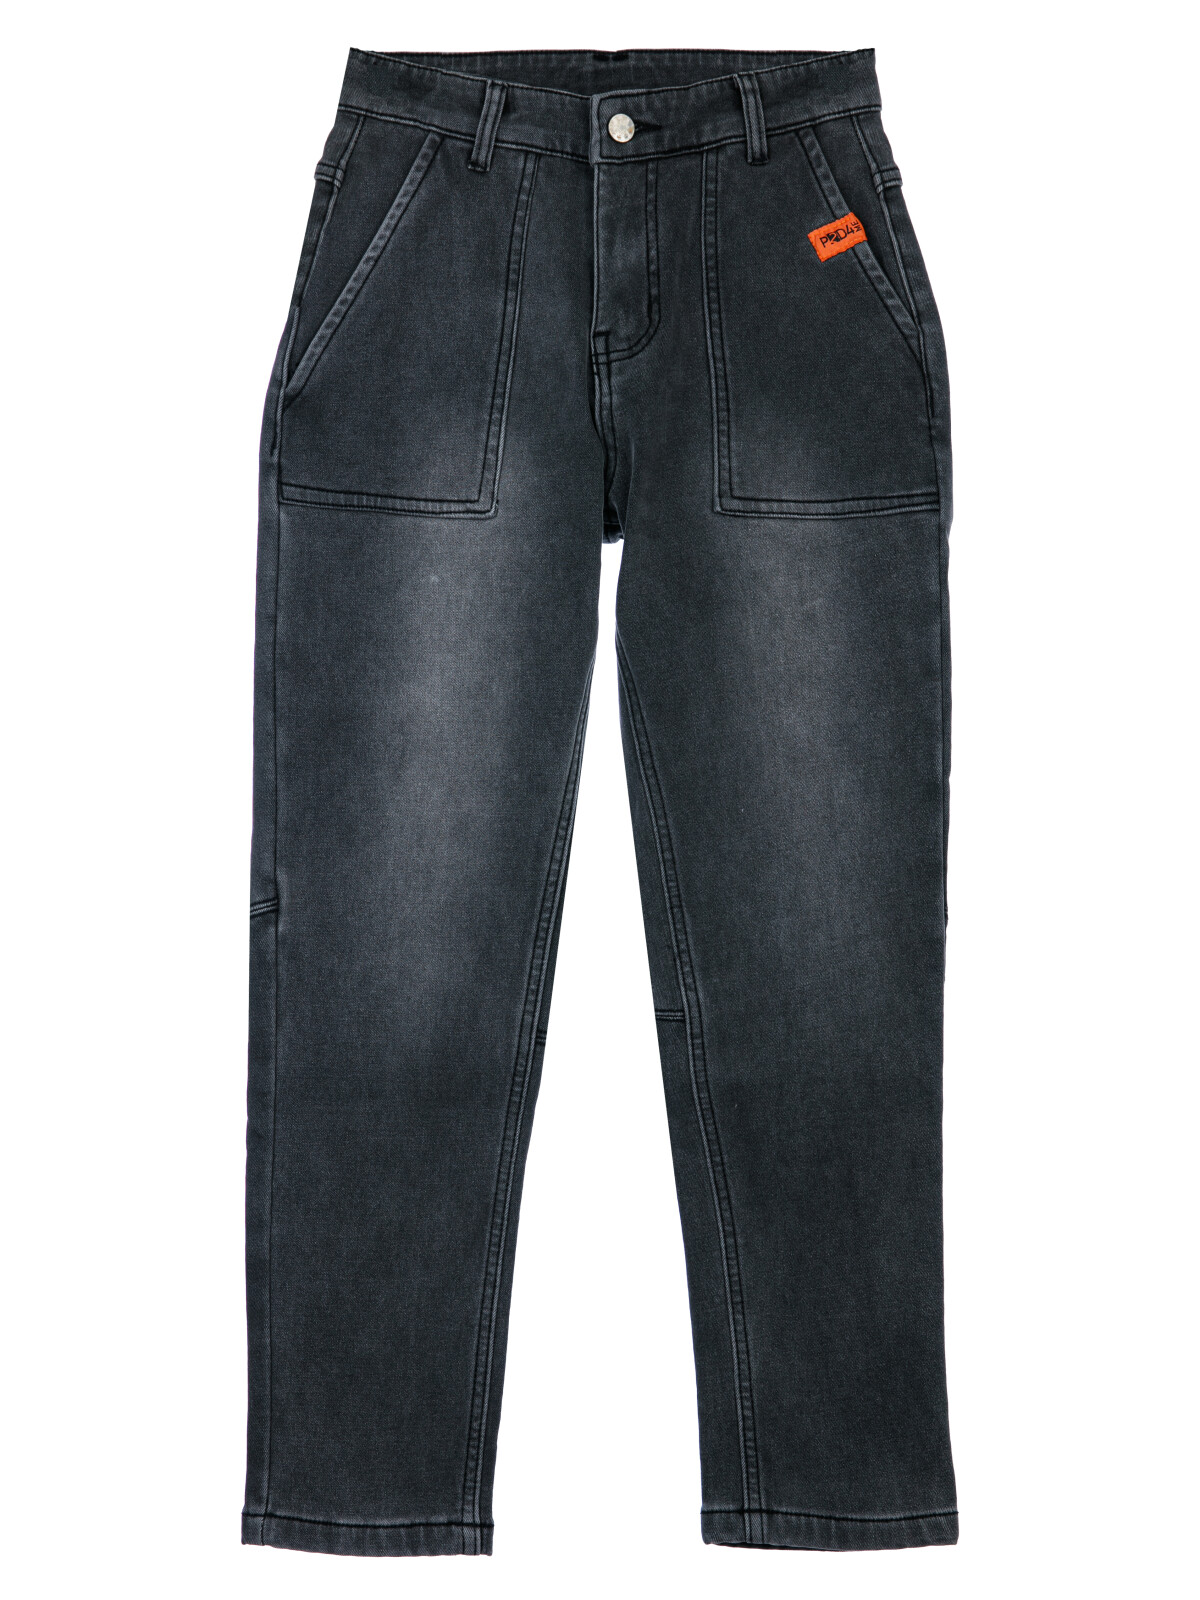 Брюки текстильные джинсовые утепленные флисом для мальчиков PlayToday, черный, 164